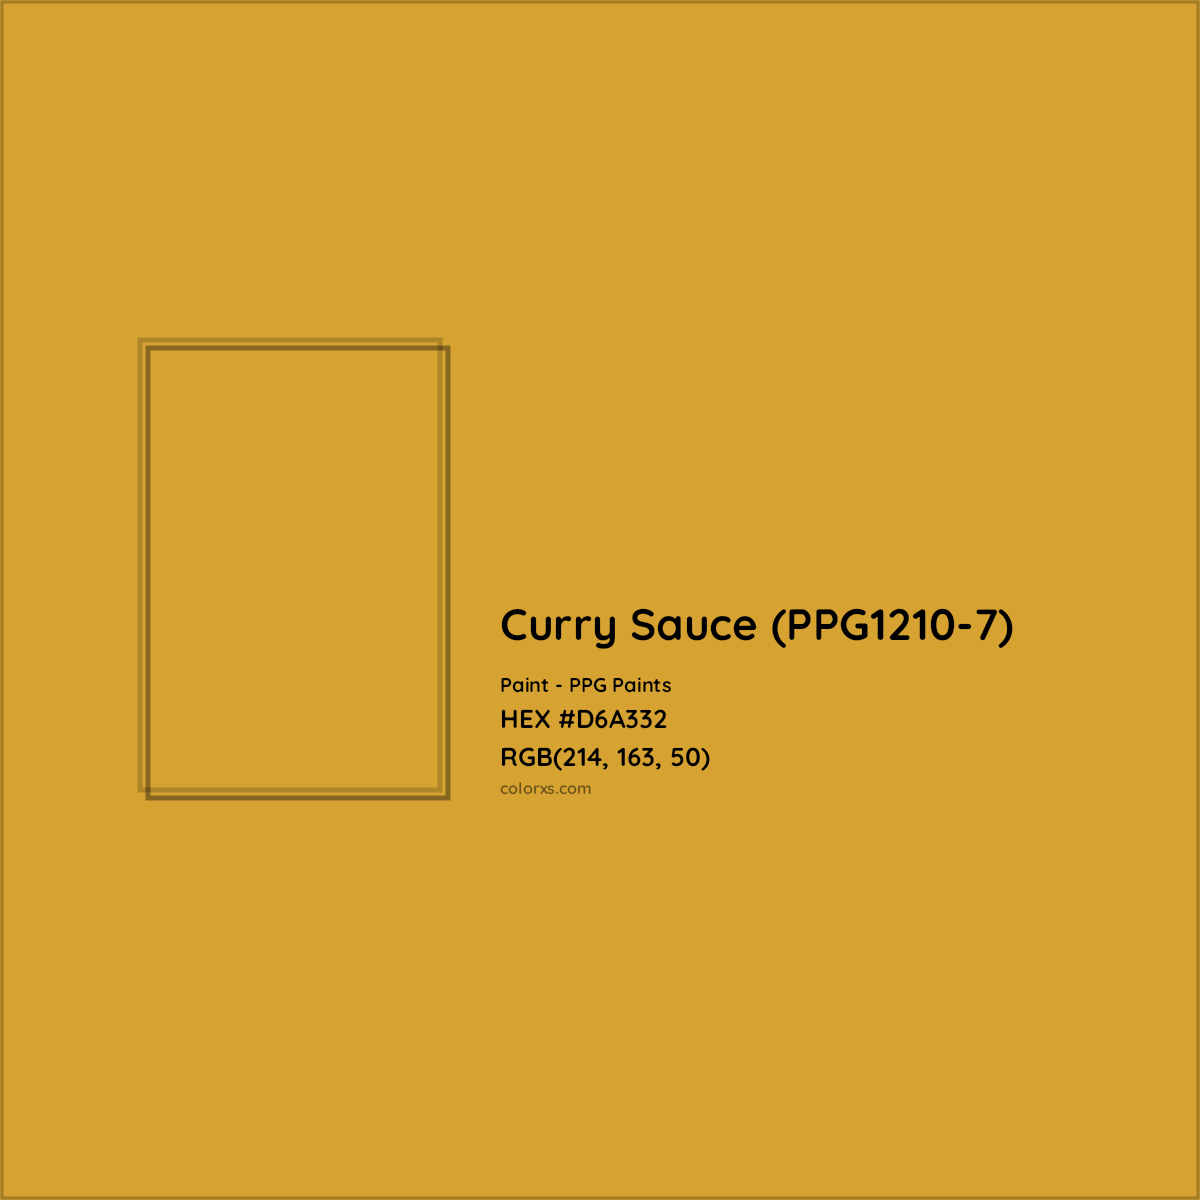 HEX #D6A332 Curry Sauce (PPG1210-7) Paint PPG Paints - Color Code